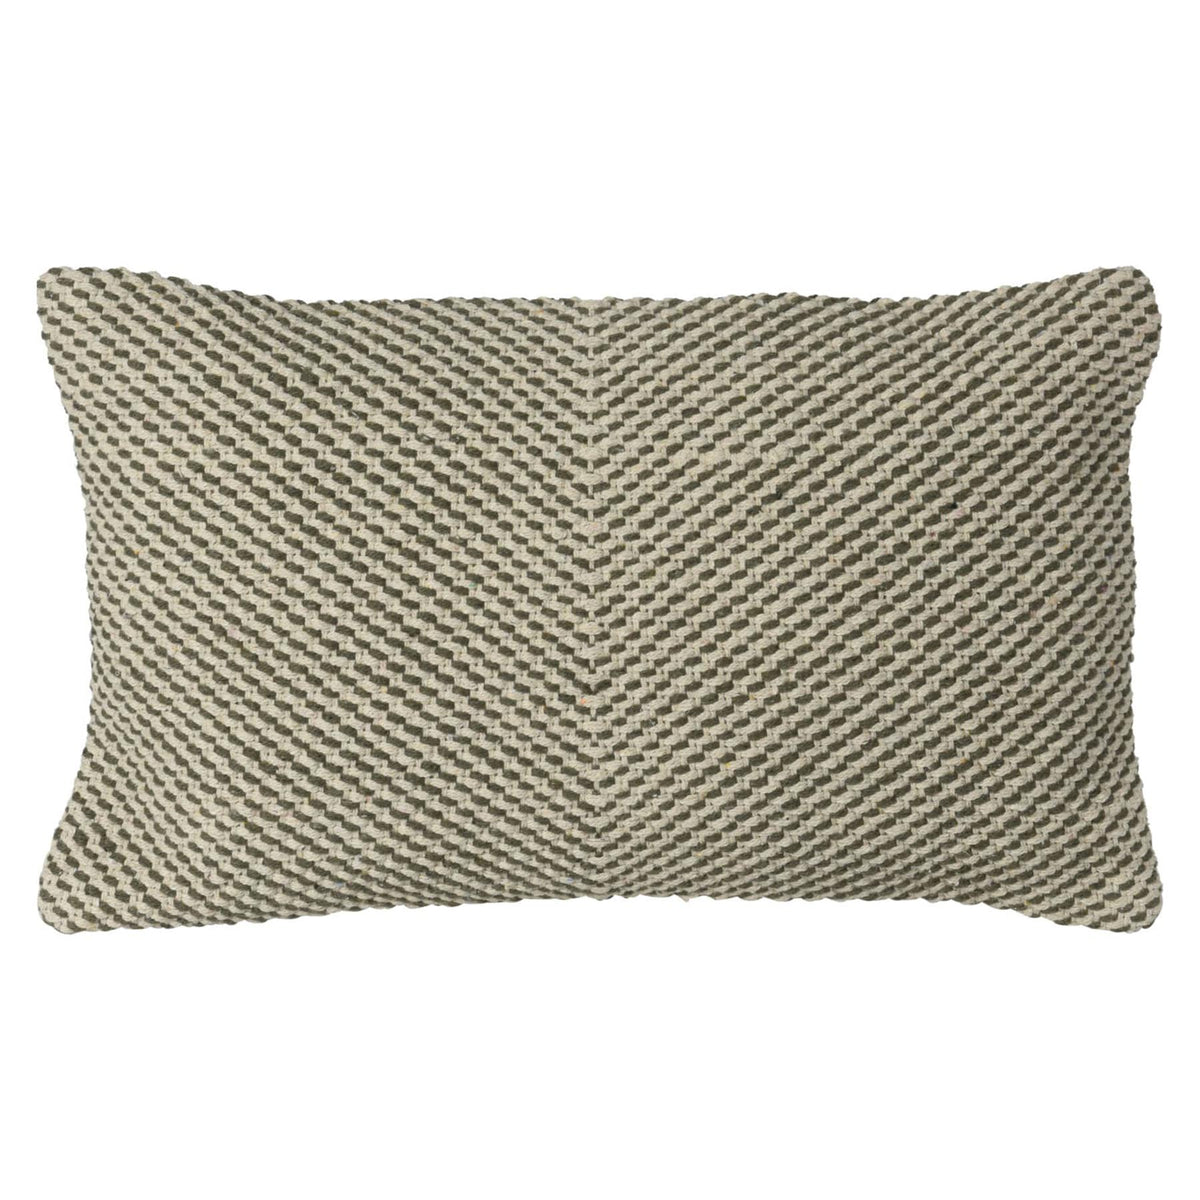 Decorative pillow - Green/Natural